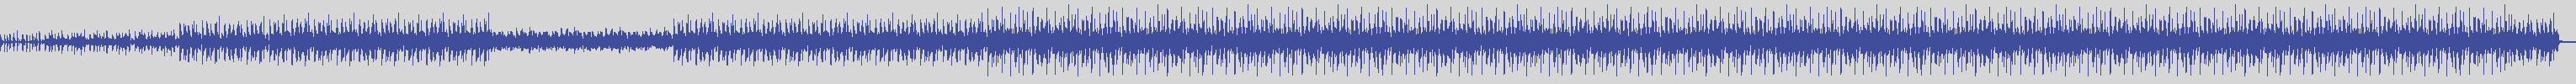 noclouds_chillout [NOC127] South Sea - Cromo [Original Mix] audio wave form